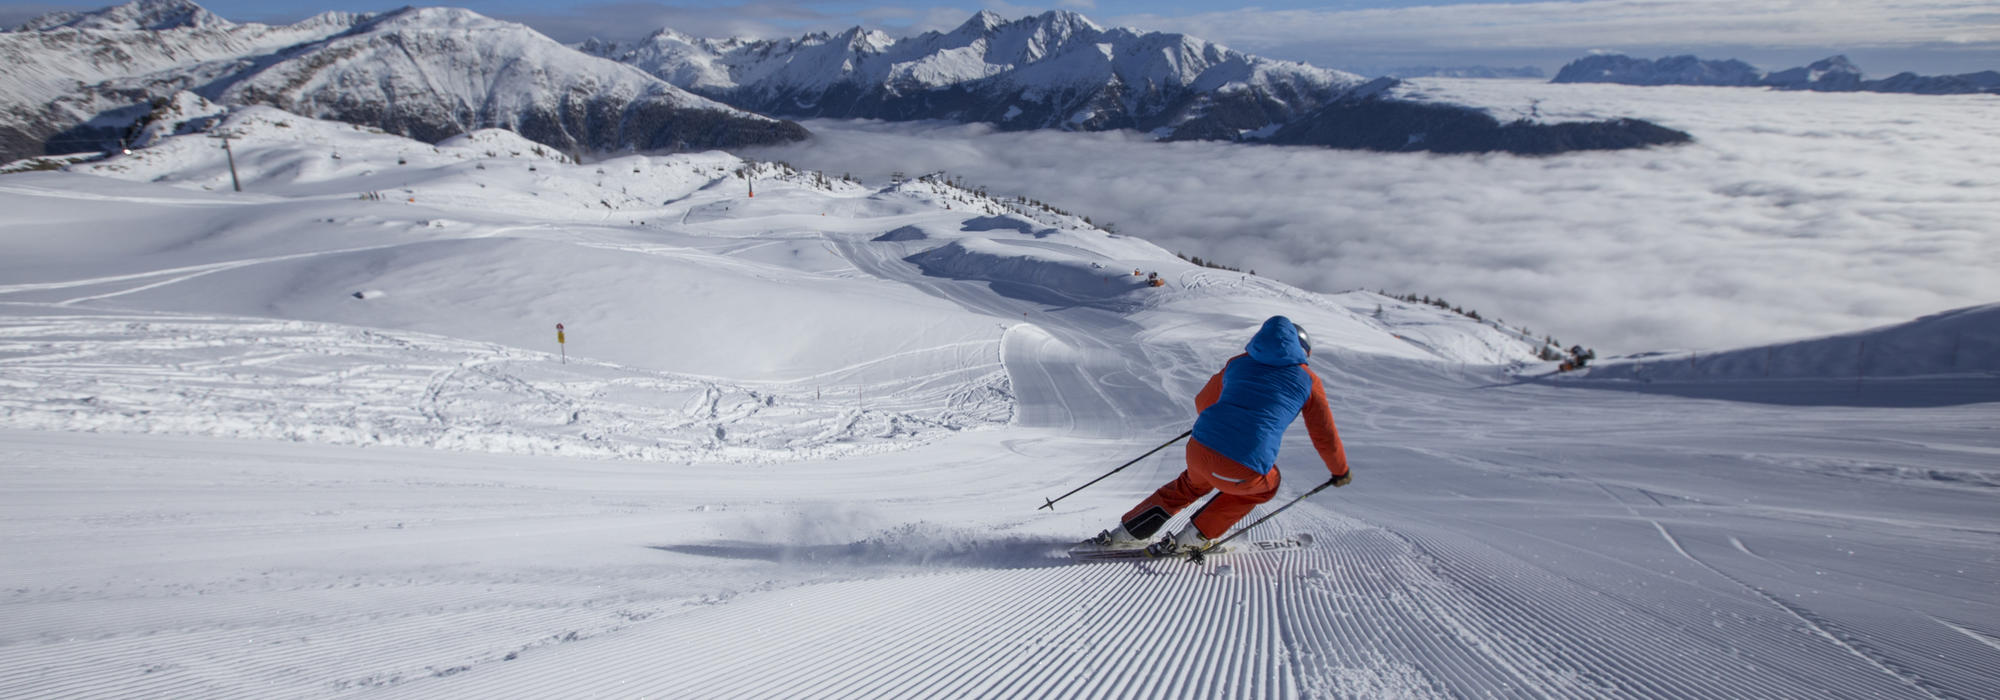 Skifahren im Skizentrum Sillian, Hochpustertal, Thurntaler | © TVB Osttirol / Berg im Bild OG